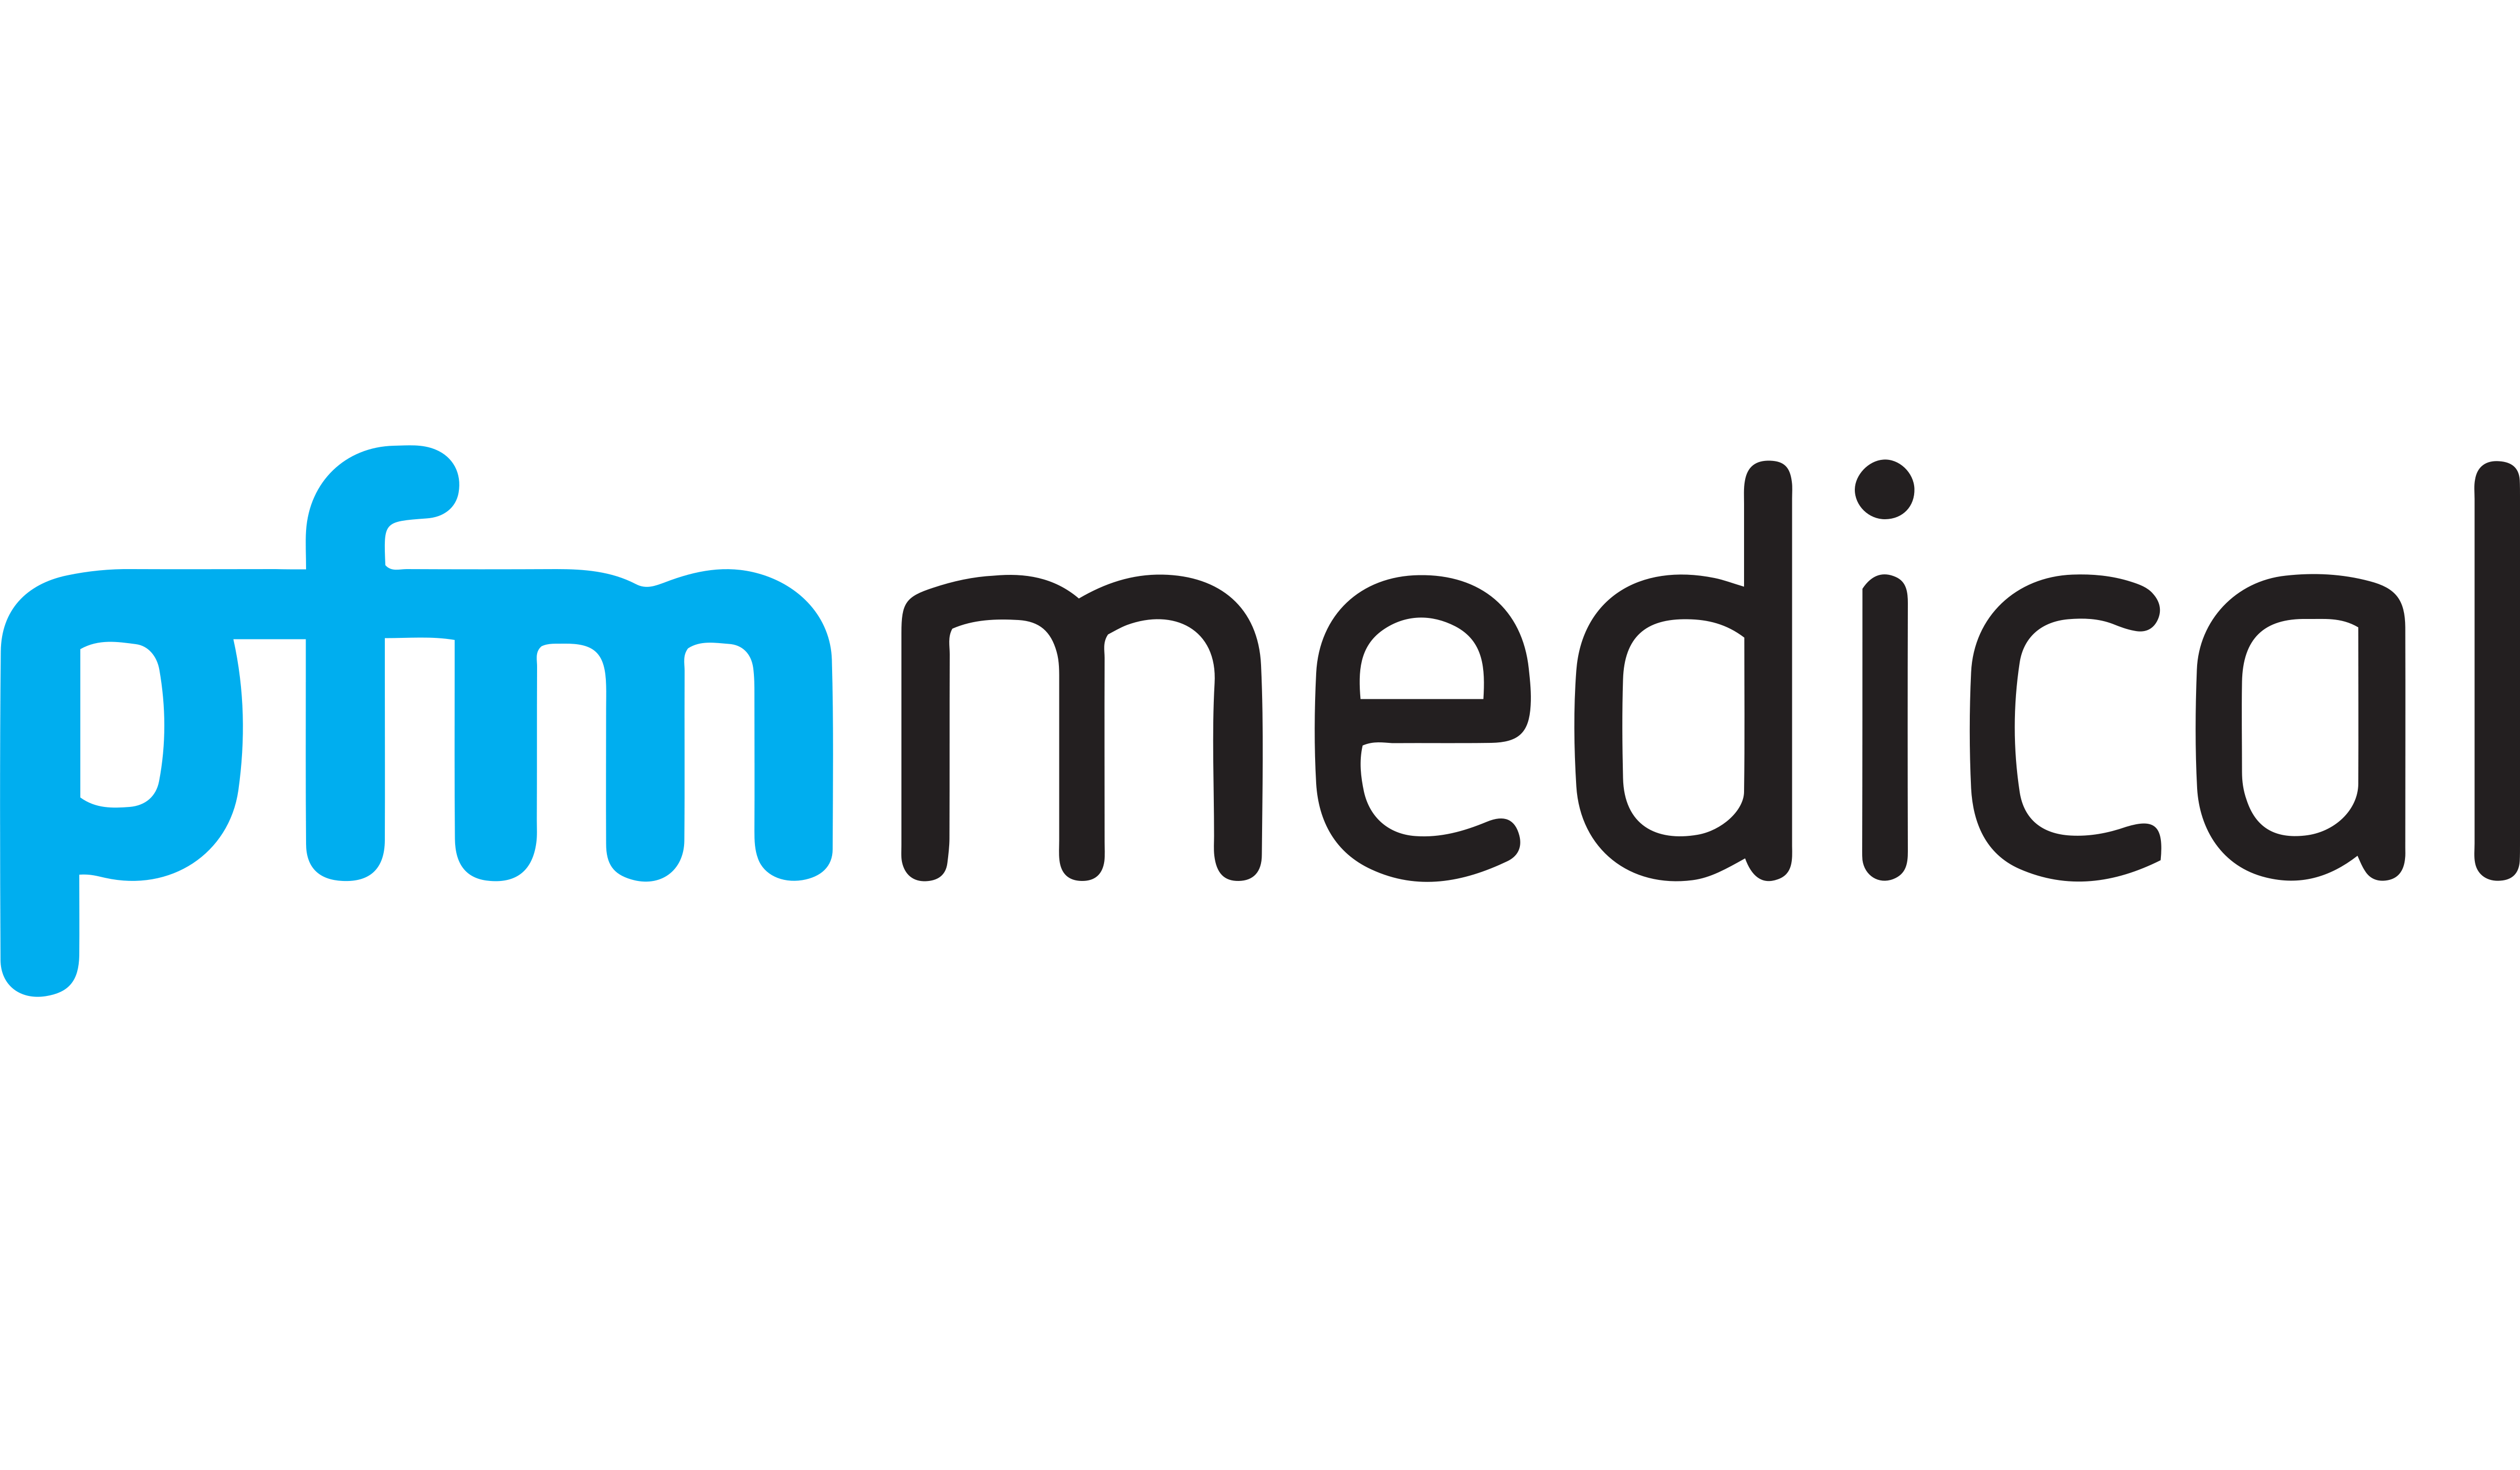 PFM Medical